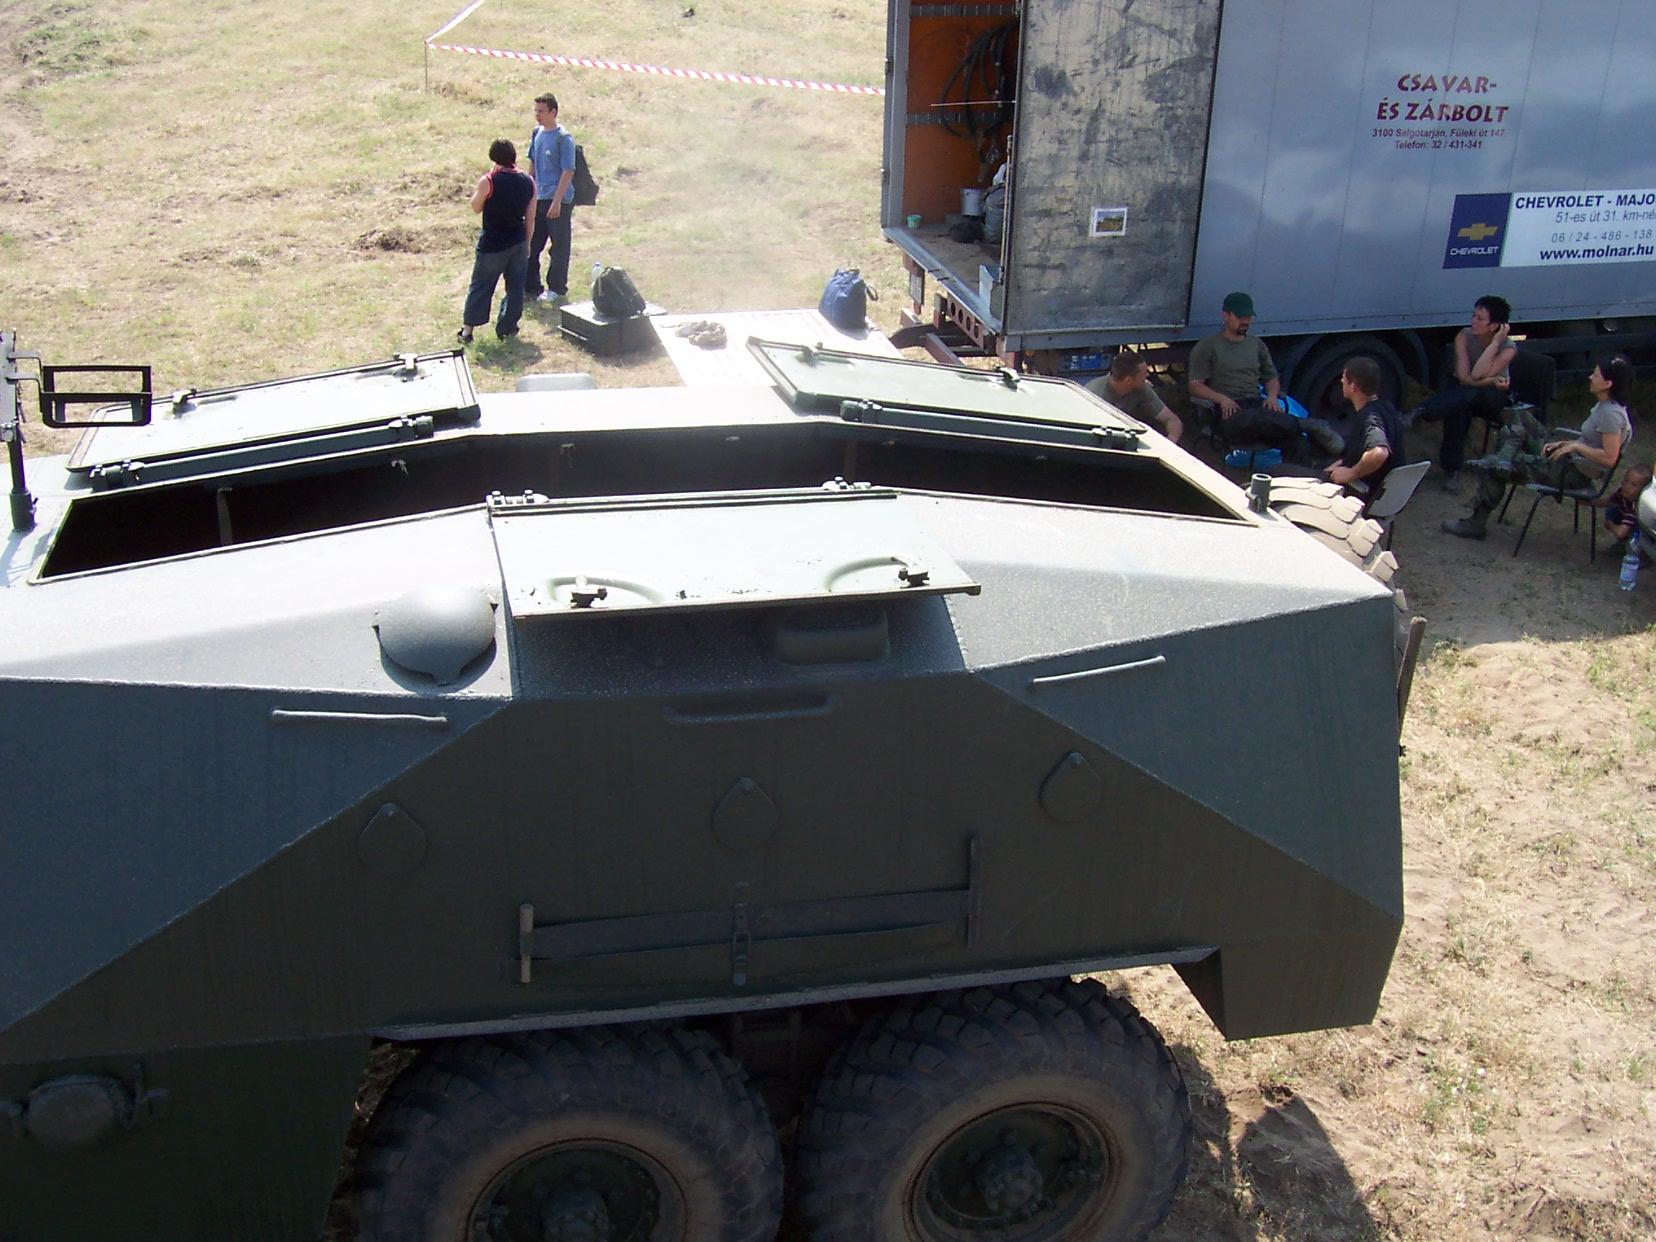 BTR-152

2006 Tata